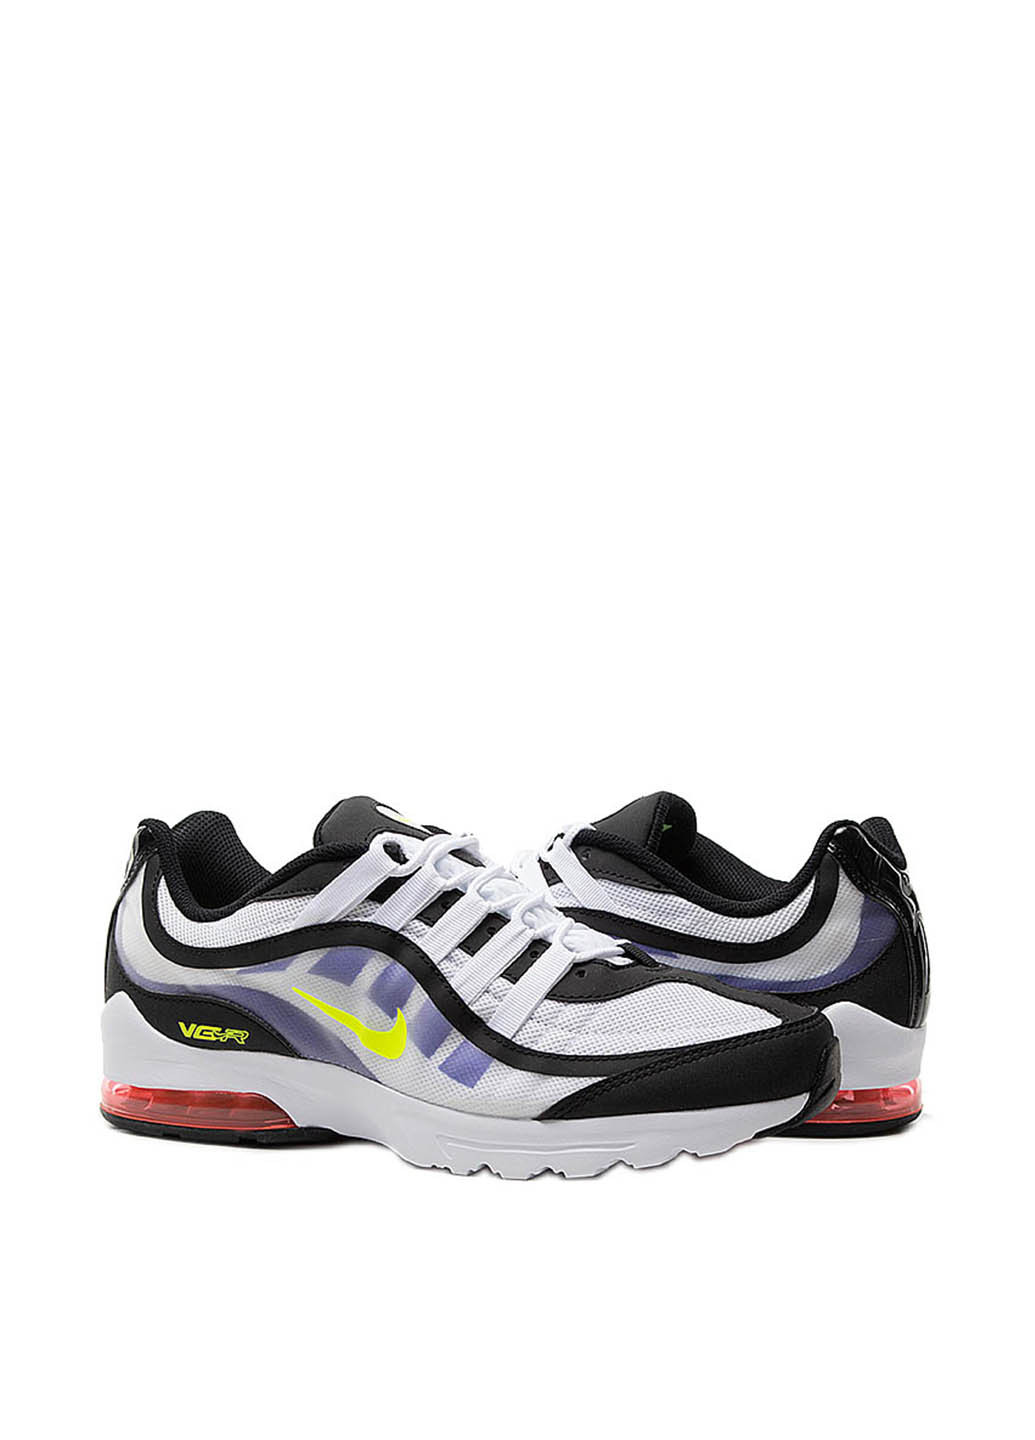 Цветные всесезонные кроссовки Nike Air Max VG-R